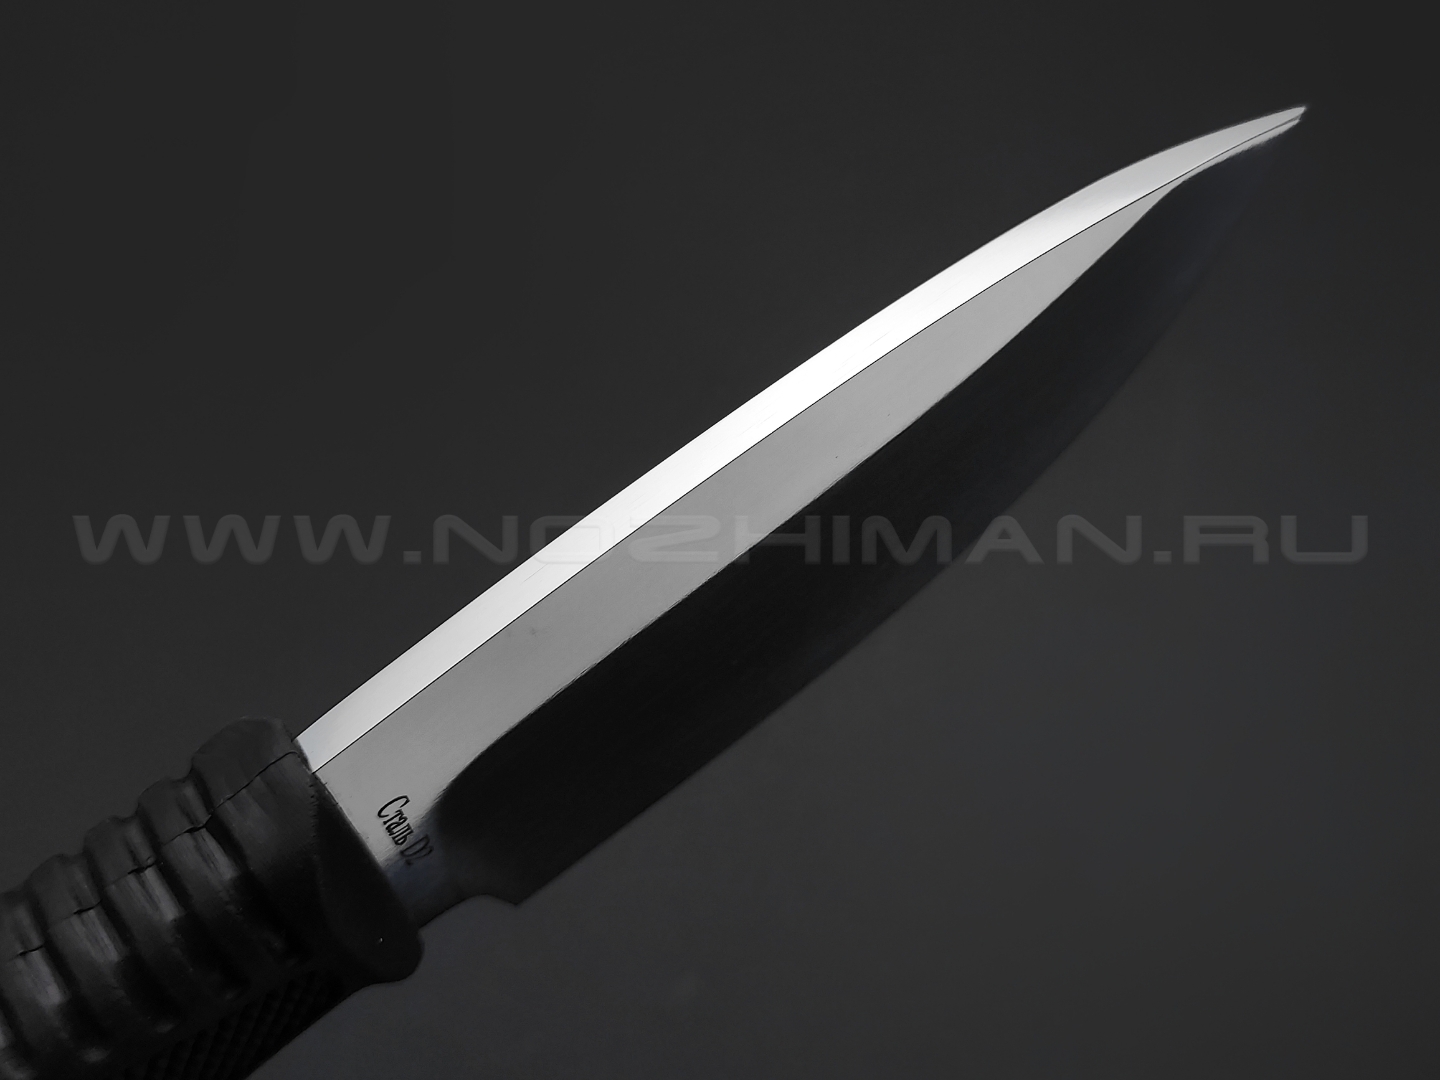 Титов и Солдатова нож №14 Барсук-3 сталь D2 полировка, рукоять резина